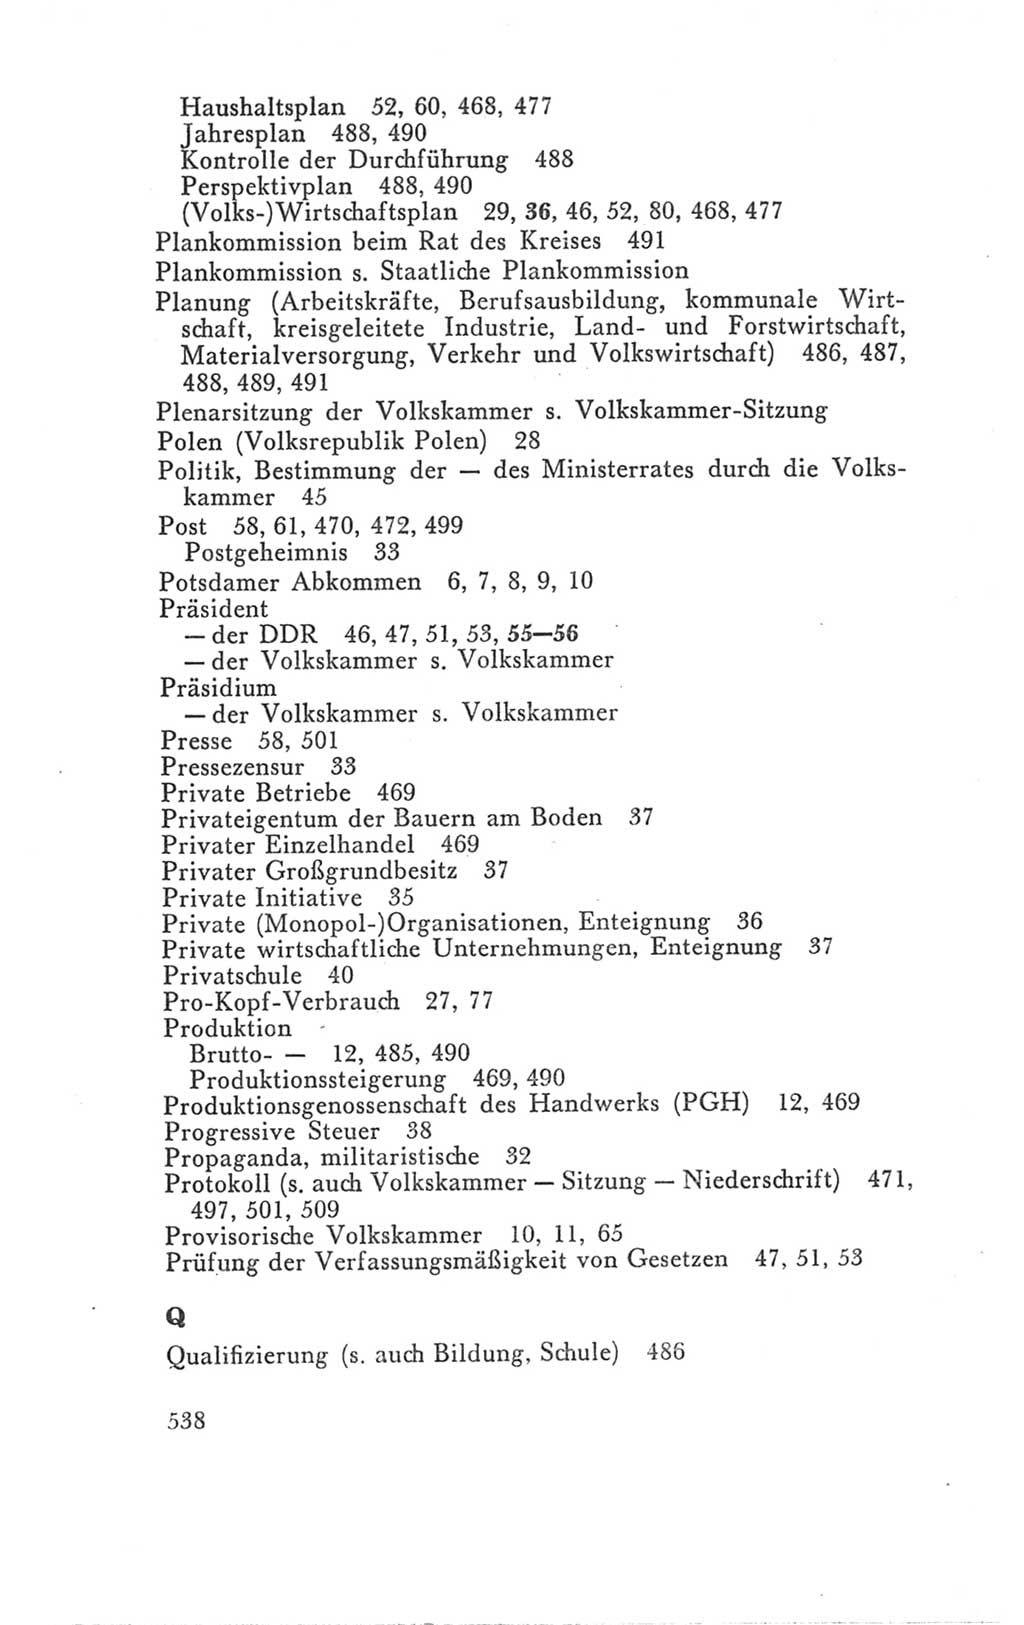 Handbuch der Volkskammer (VK) der Deutschen Demokratischen Republik (DDR), 3. Wahlperiode 1958-1963, Seite 538 (Hdb. VK. DDR 3. WP. 1958-1963, S. 538)